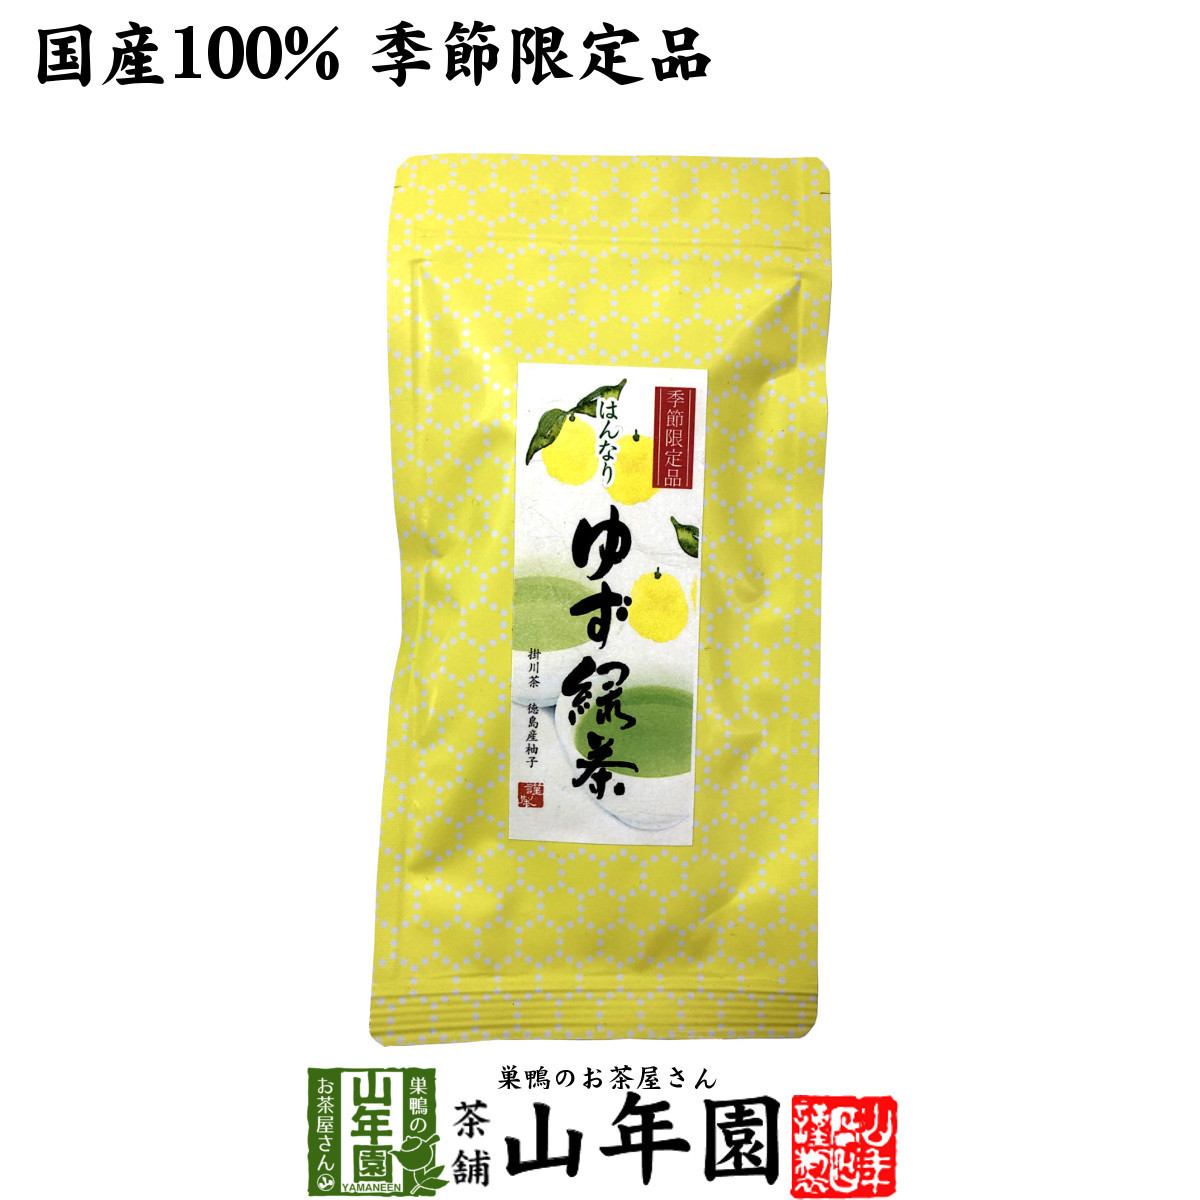  чай японский чай местного производства 100% yuzu зеленый чай 70g бесплатная доставка 